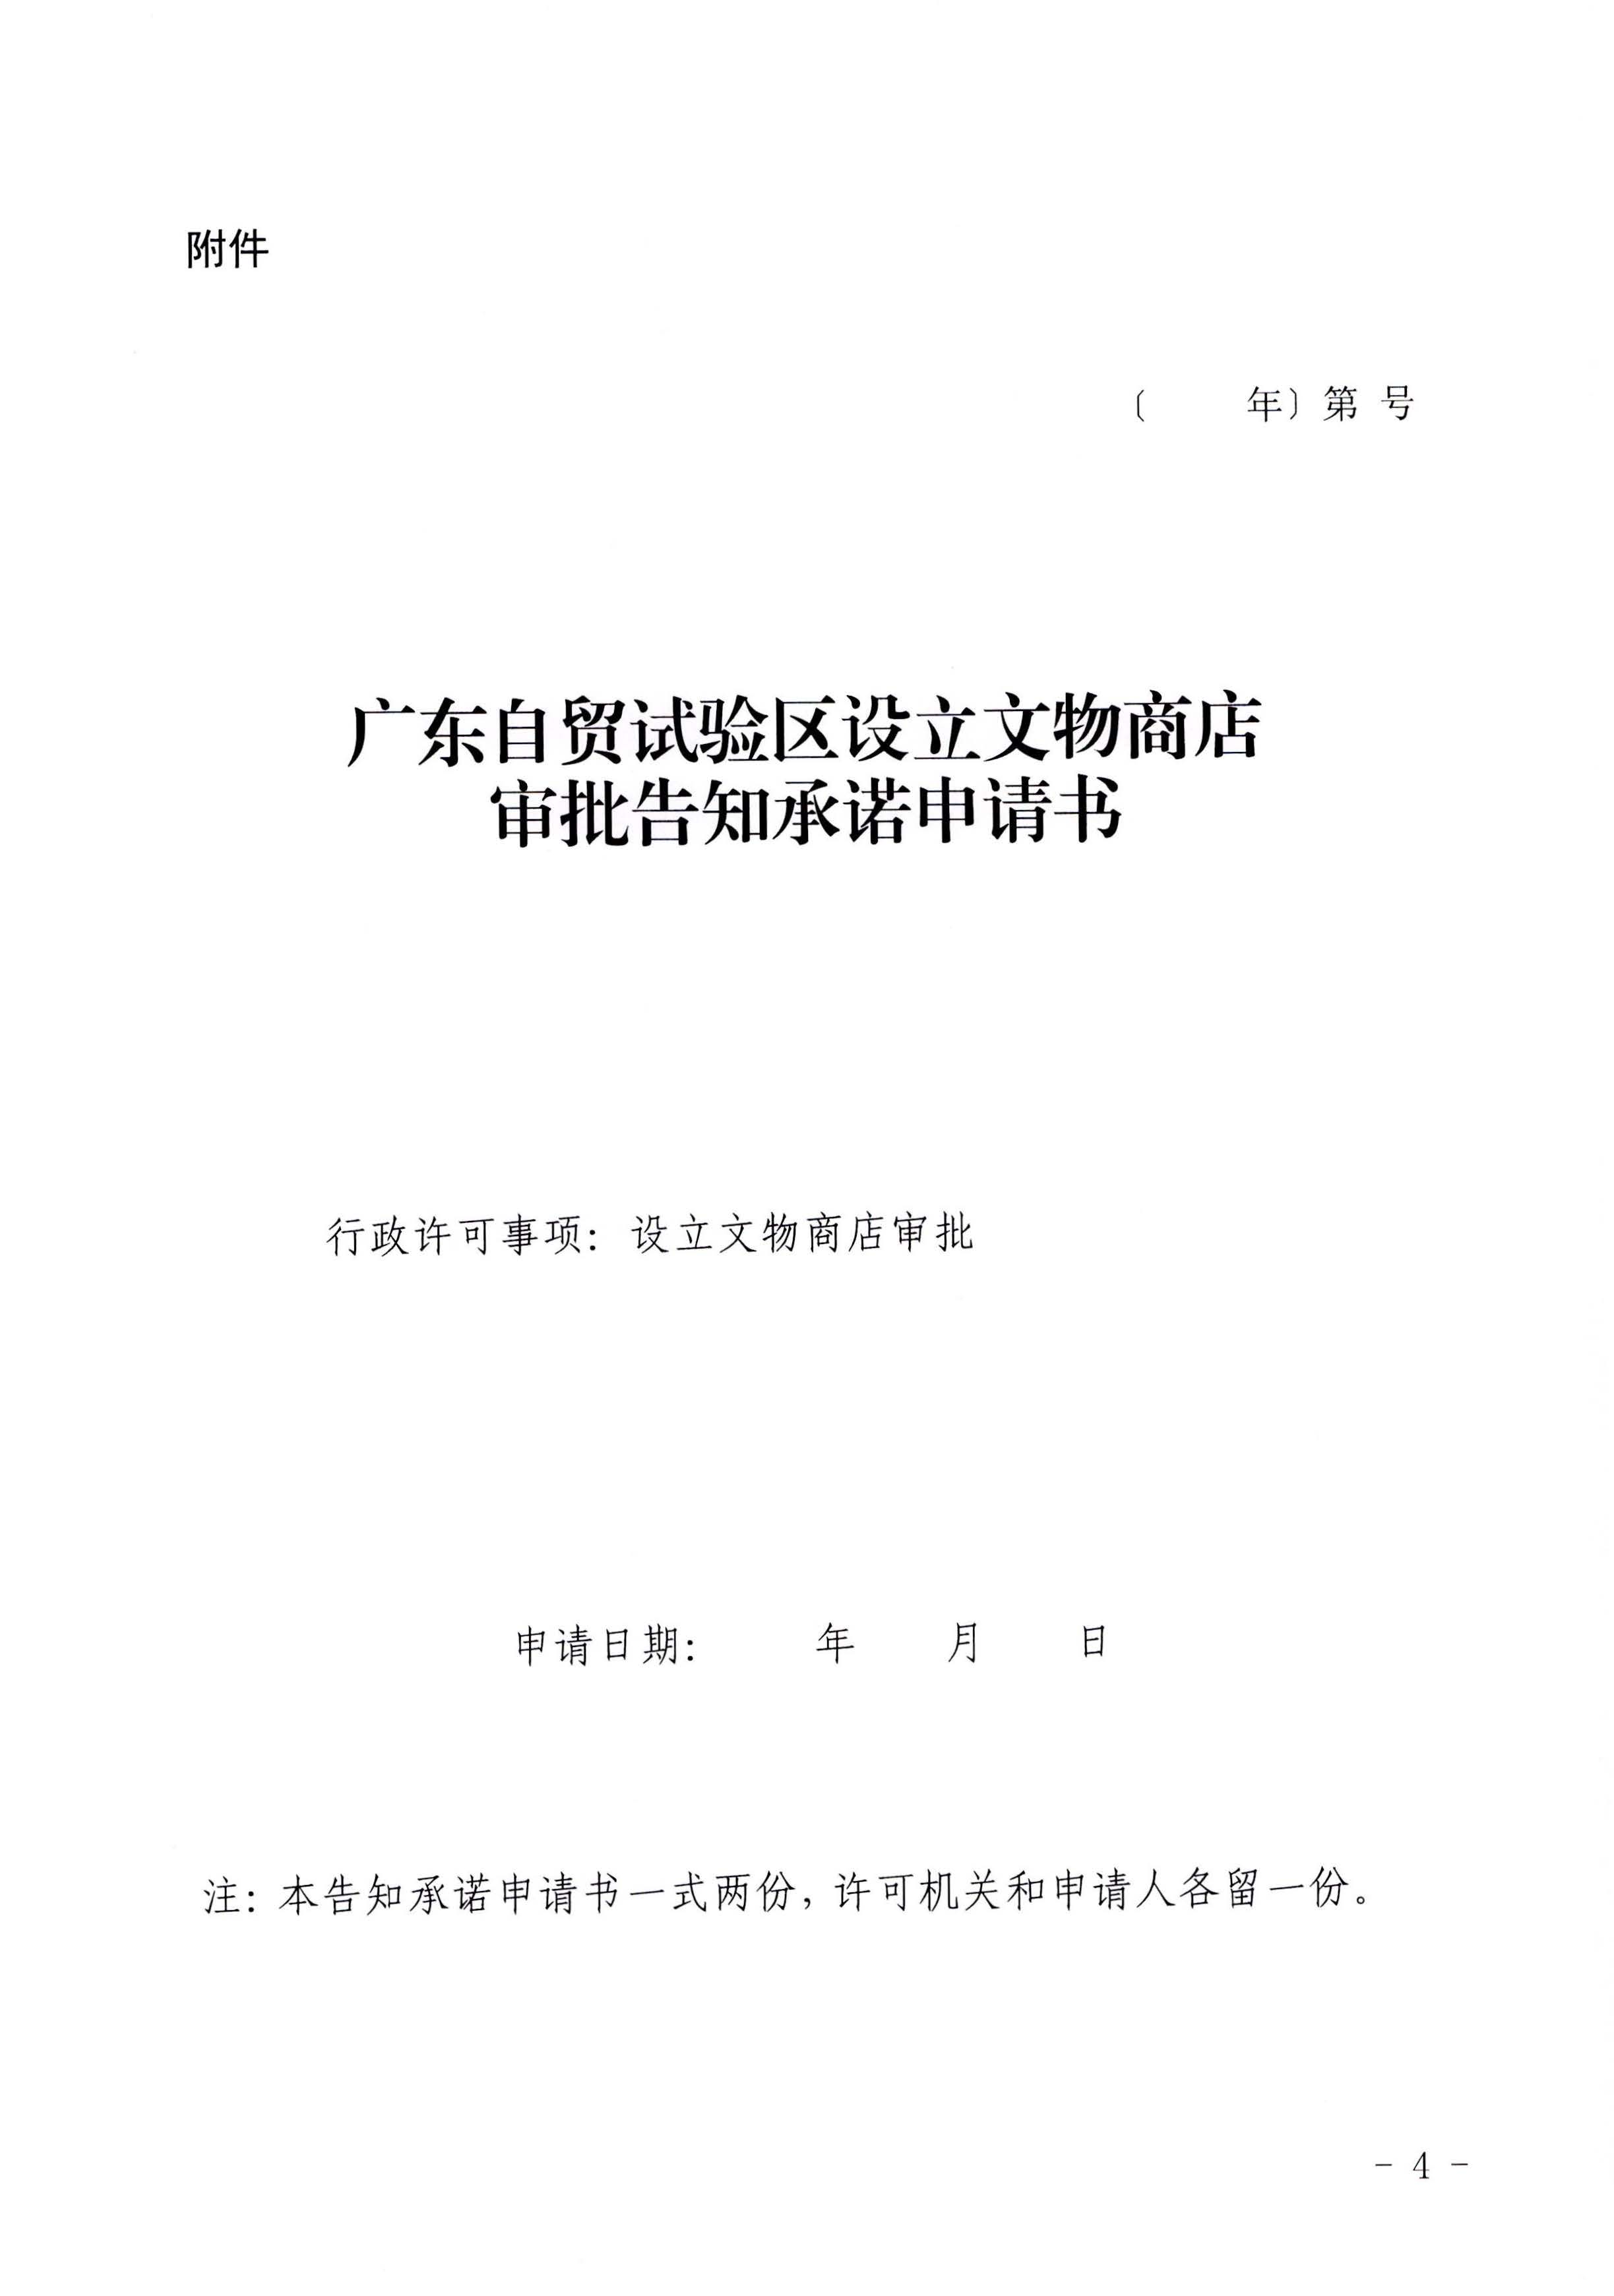 广东省文化和旅游厅印发证照分离改革实施方案的通知_页面_50.jpg